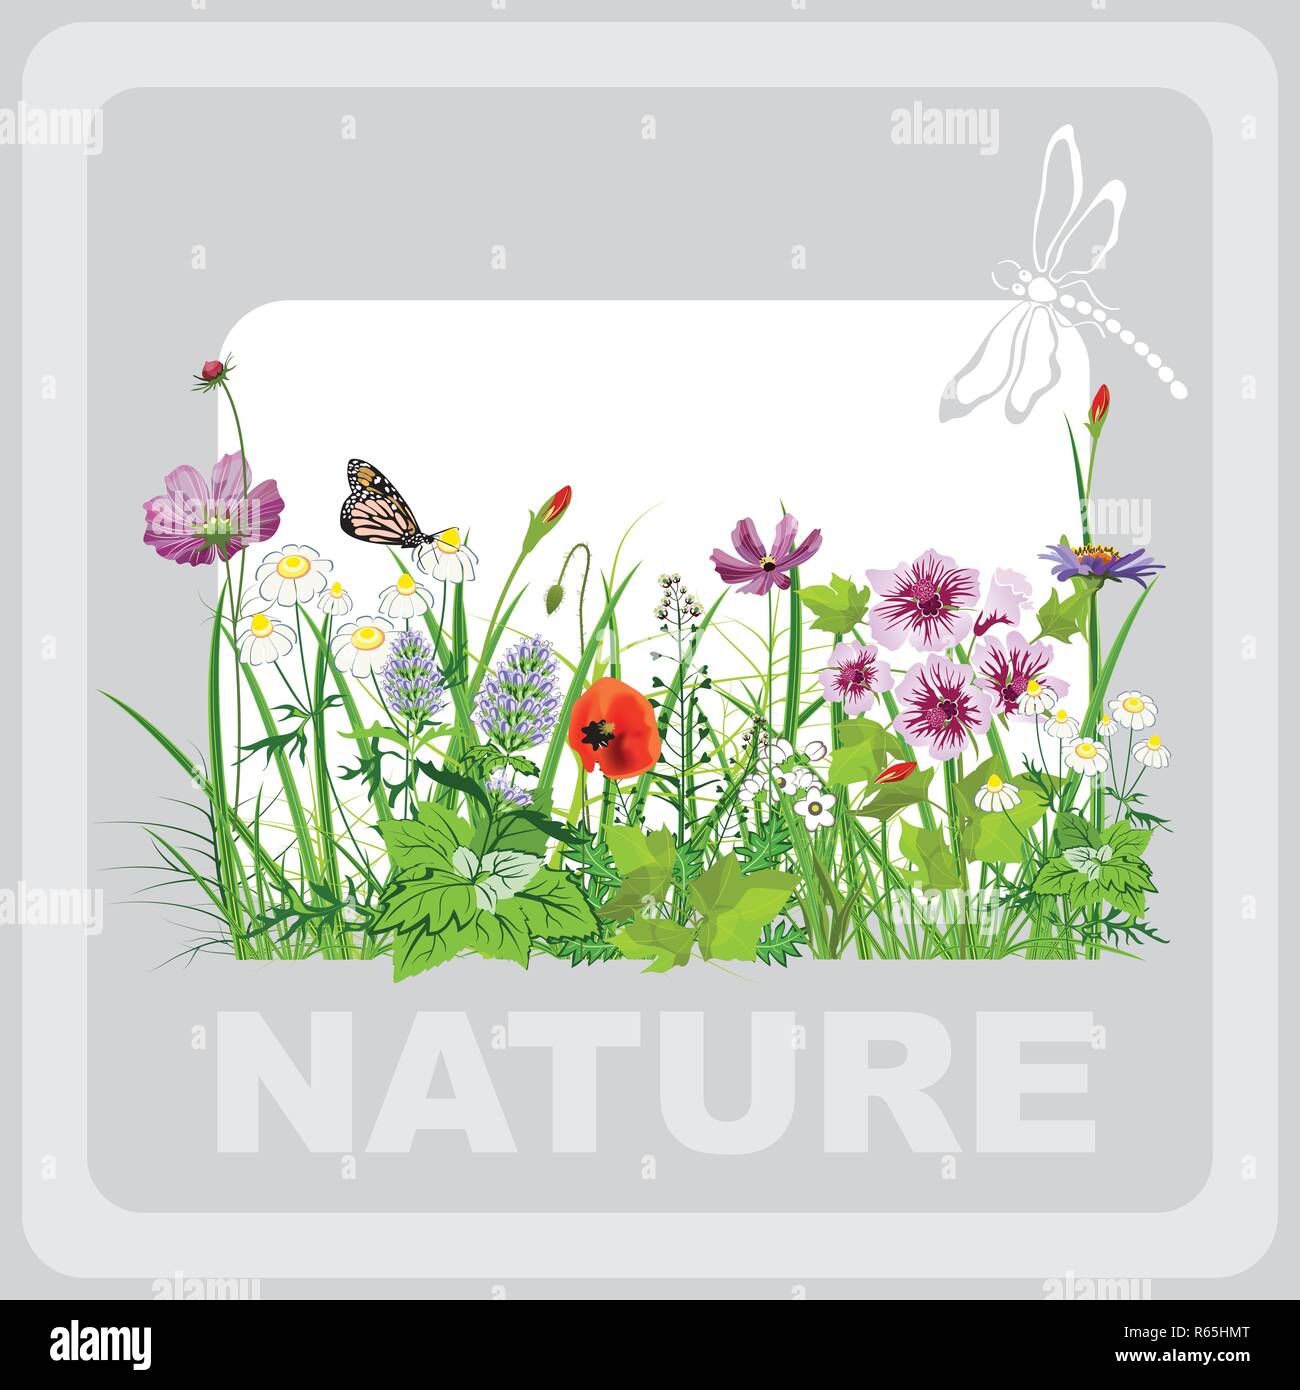 Grünes Gras und Blumen, Landschaft, Natur, Banner in Vektorgrafiken Stock Vektor